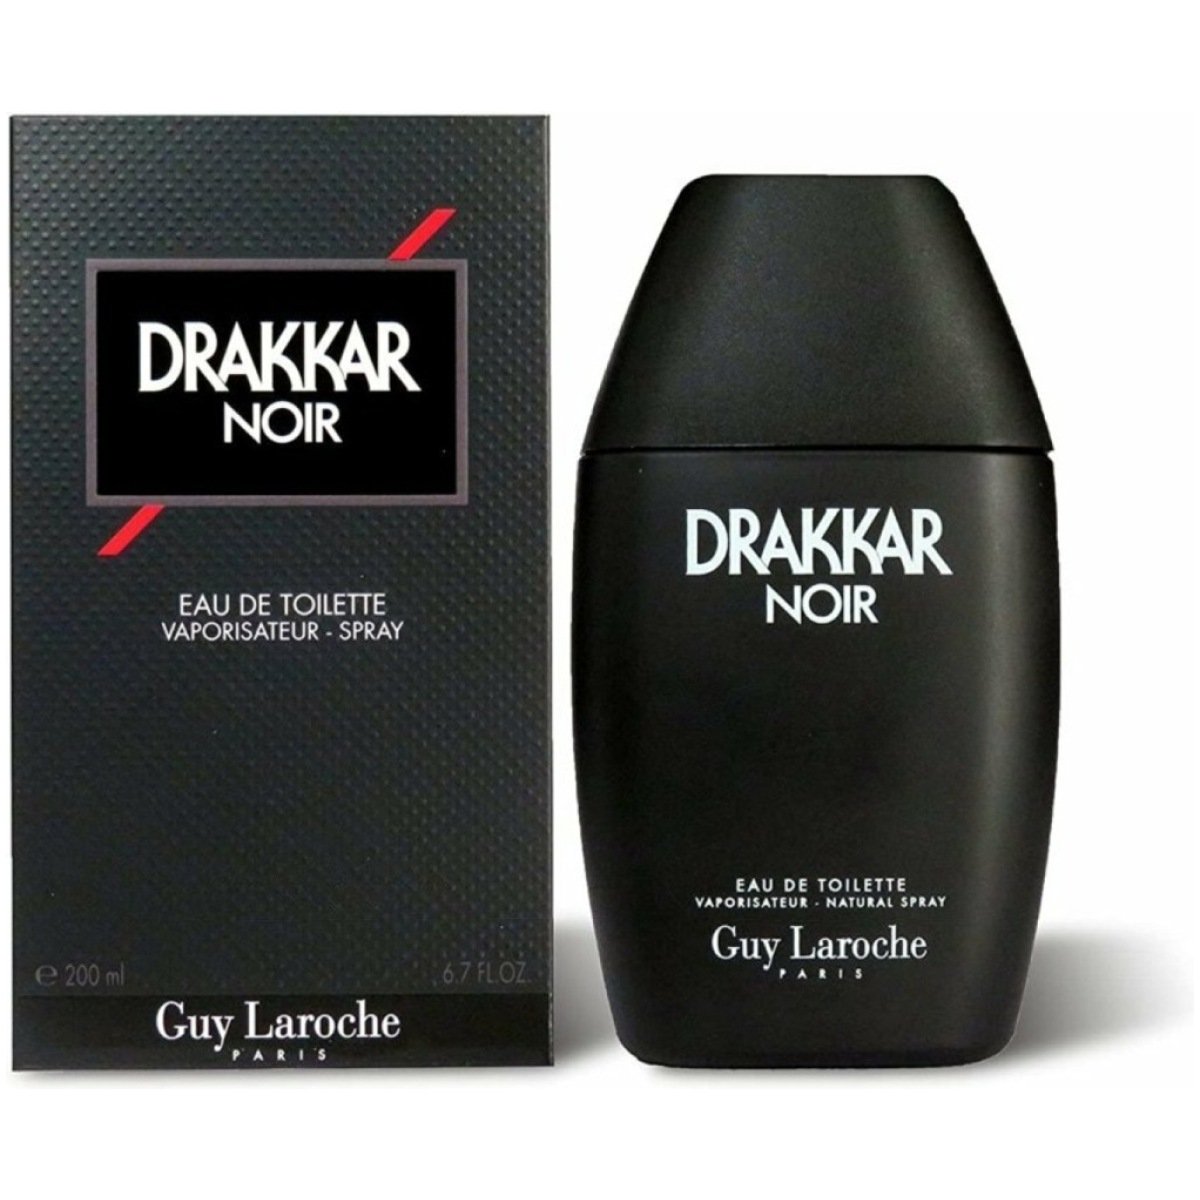 Guy Laroche Drakkar Noir EDT Perfume For Men 200 ml